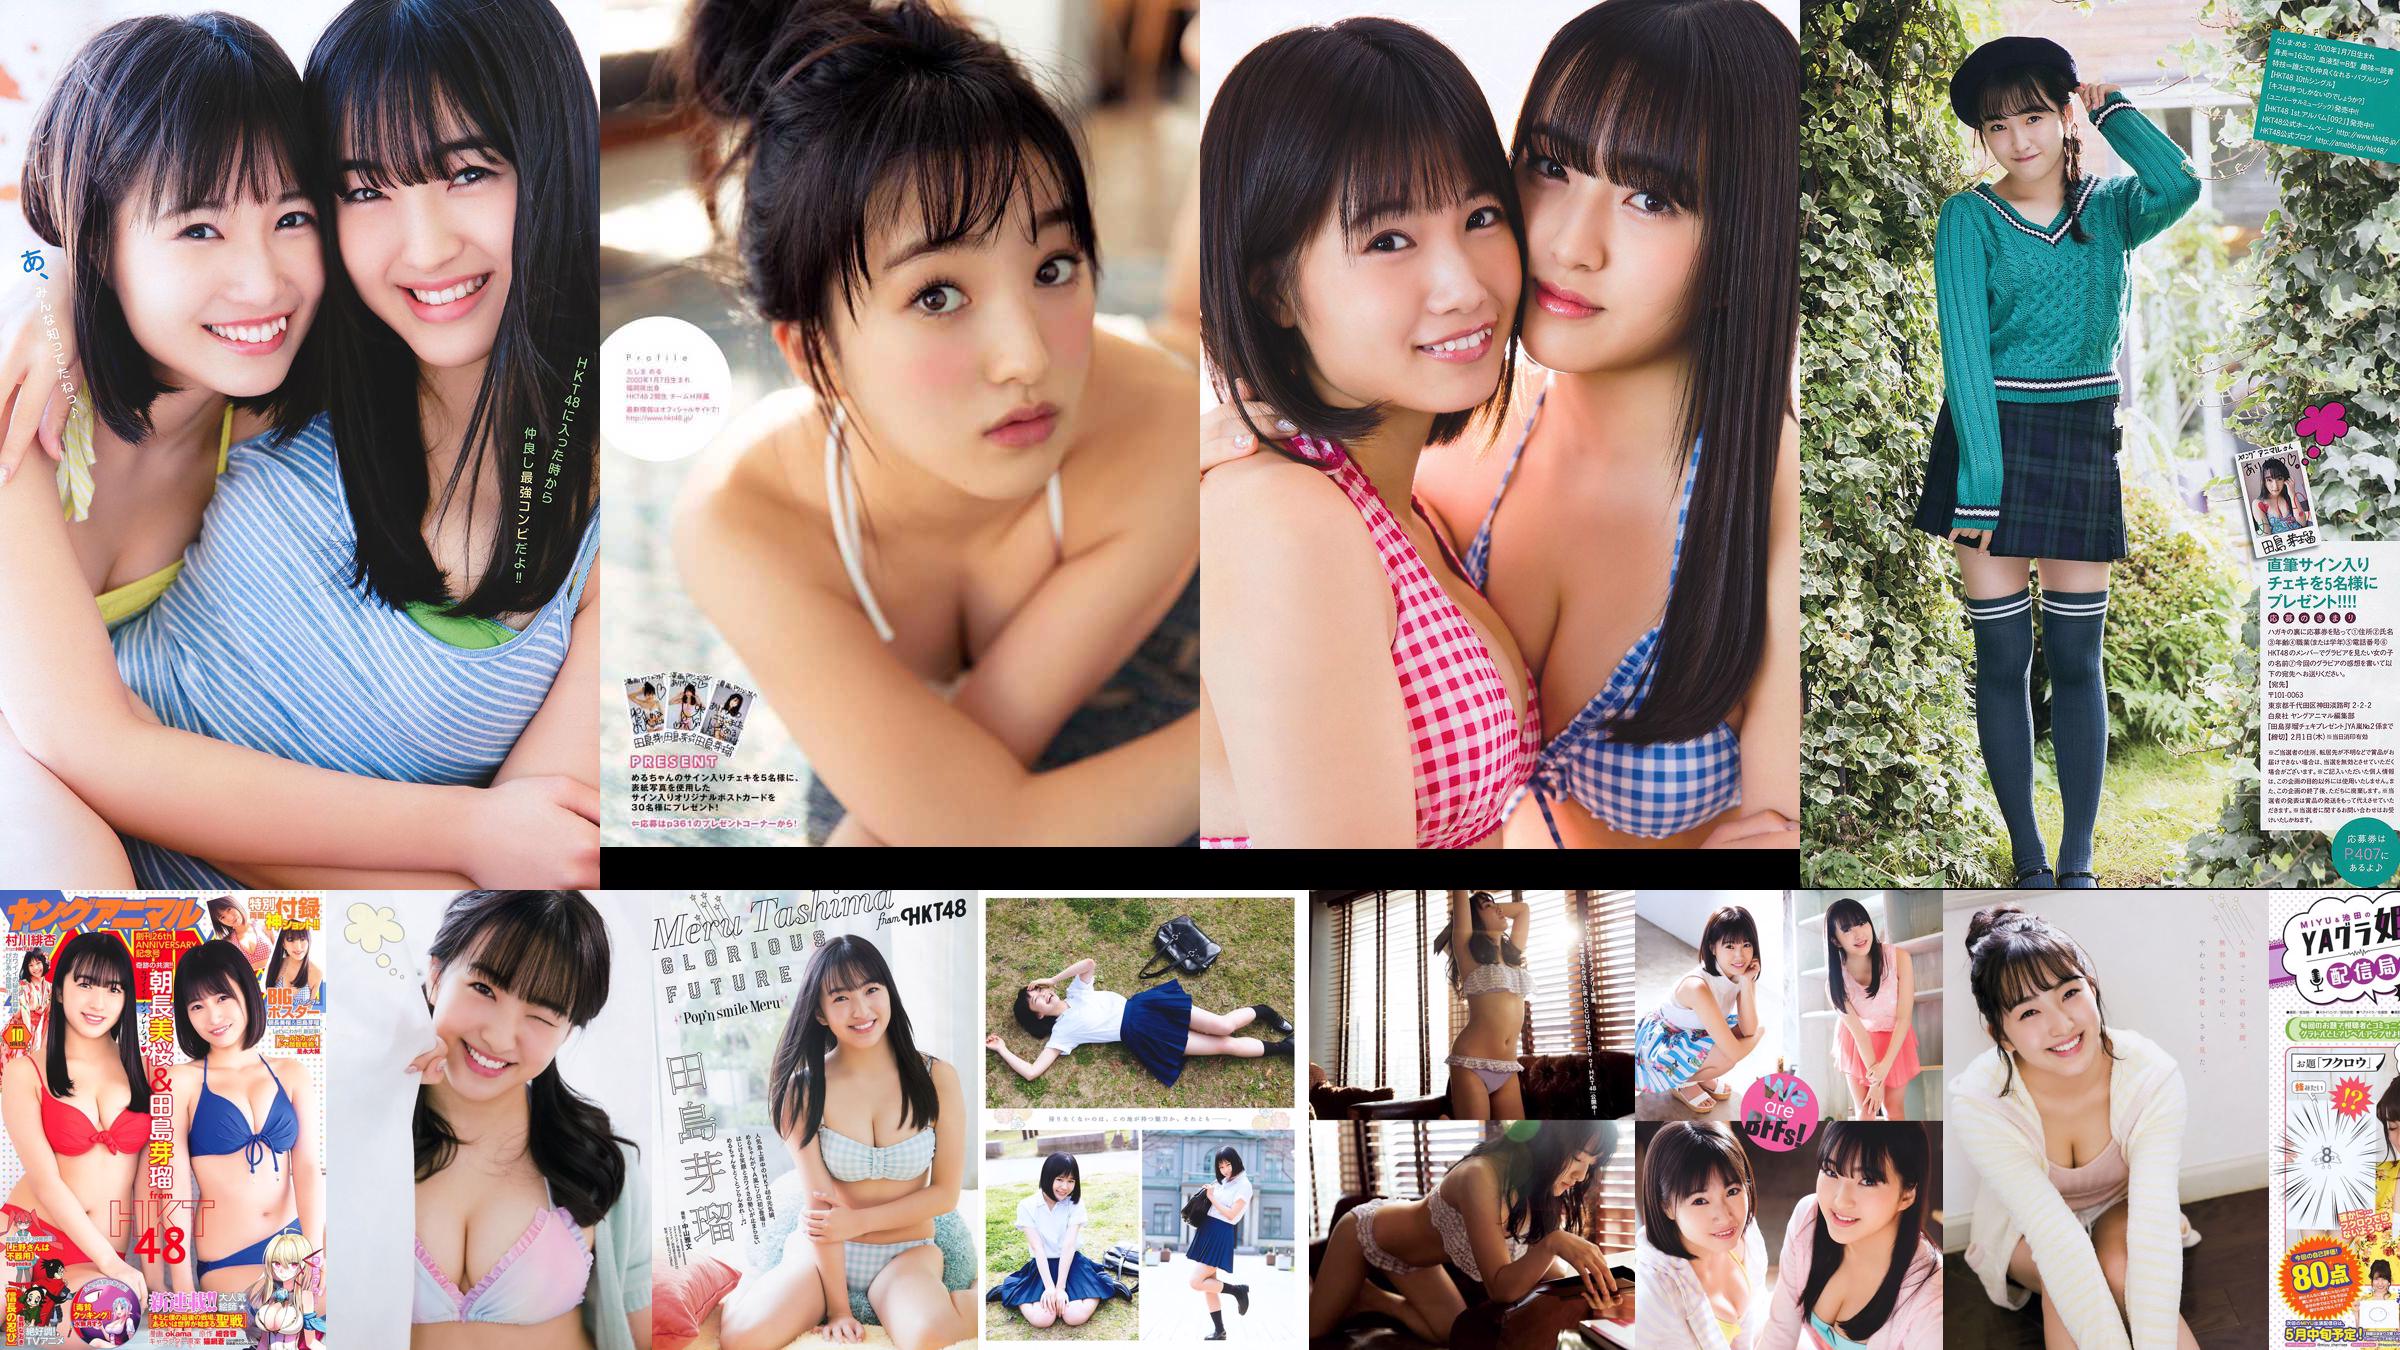 Nana Ayano Yuka Someya [Young Animal Arashi Special Edition] No.06 2015 Ảnh No.6c94e2 Trang 2